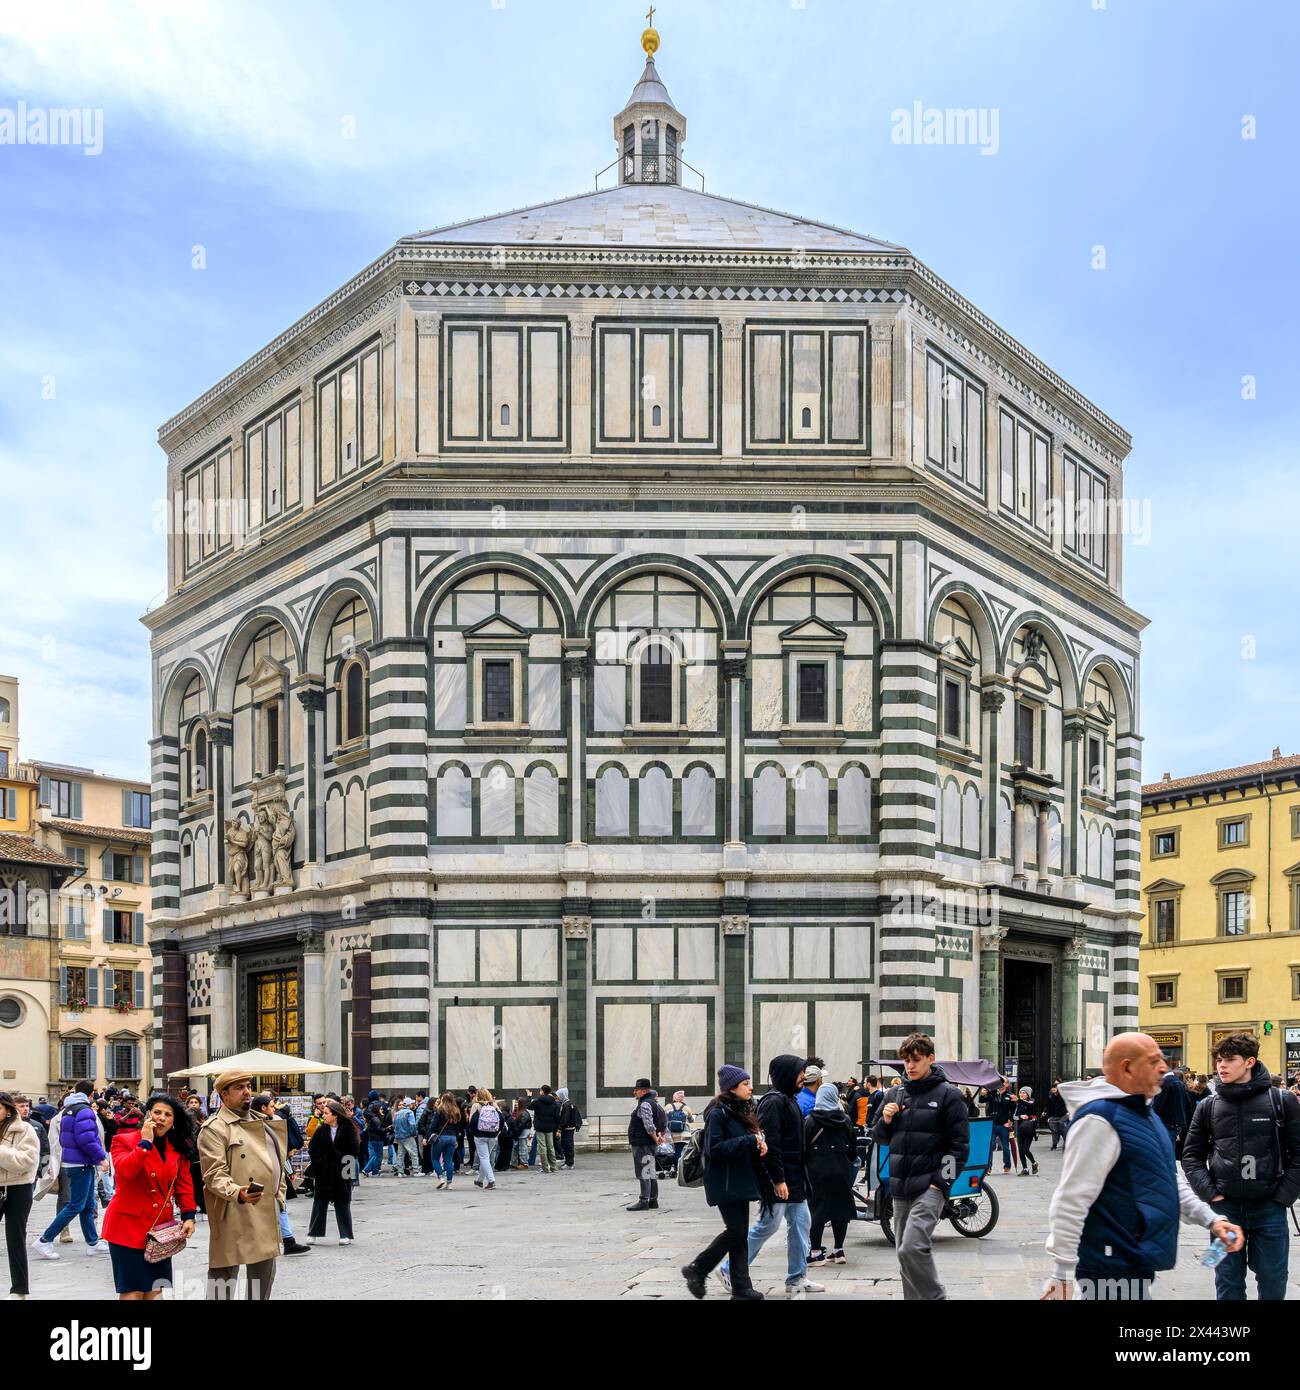 Battistero ottagonale di San Giovanni (Battistero di San Giovanni) di fronte alla Cattedrale di Santa Maria del Fiore, gli edifici più rappresentativi di Firenze. Foto Stock